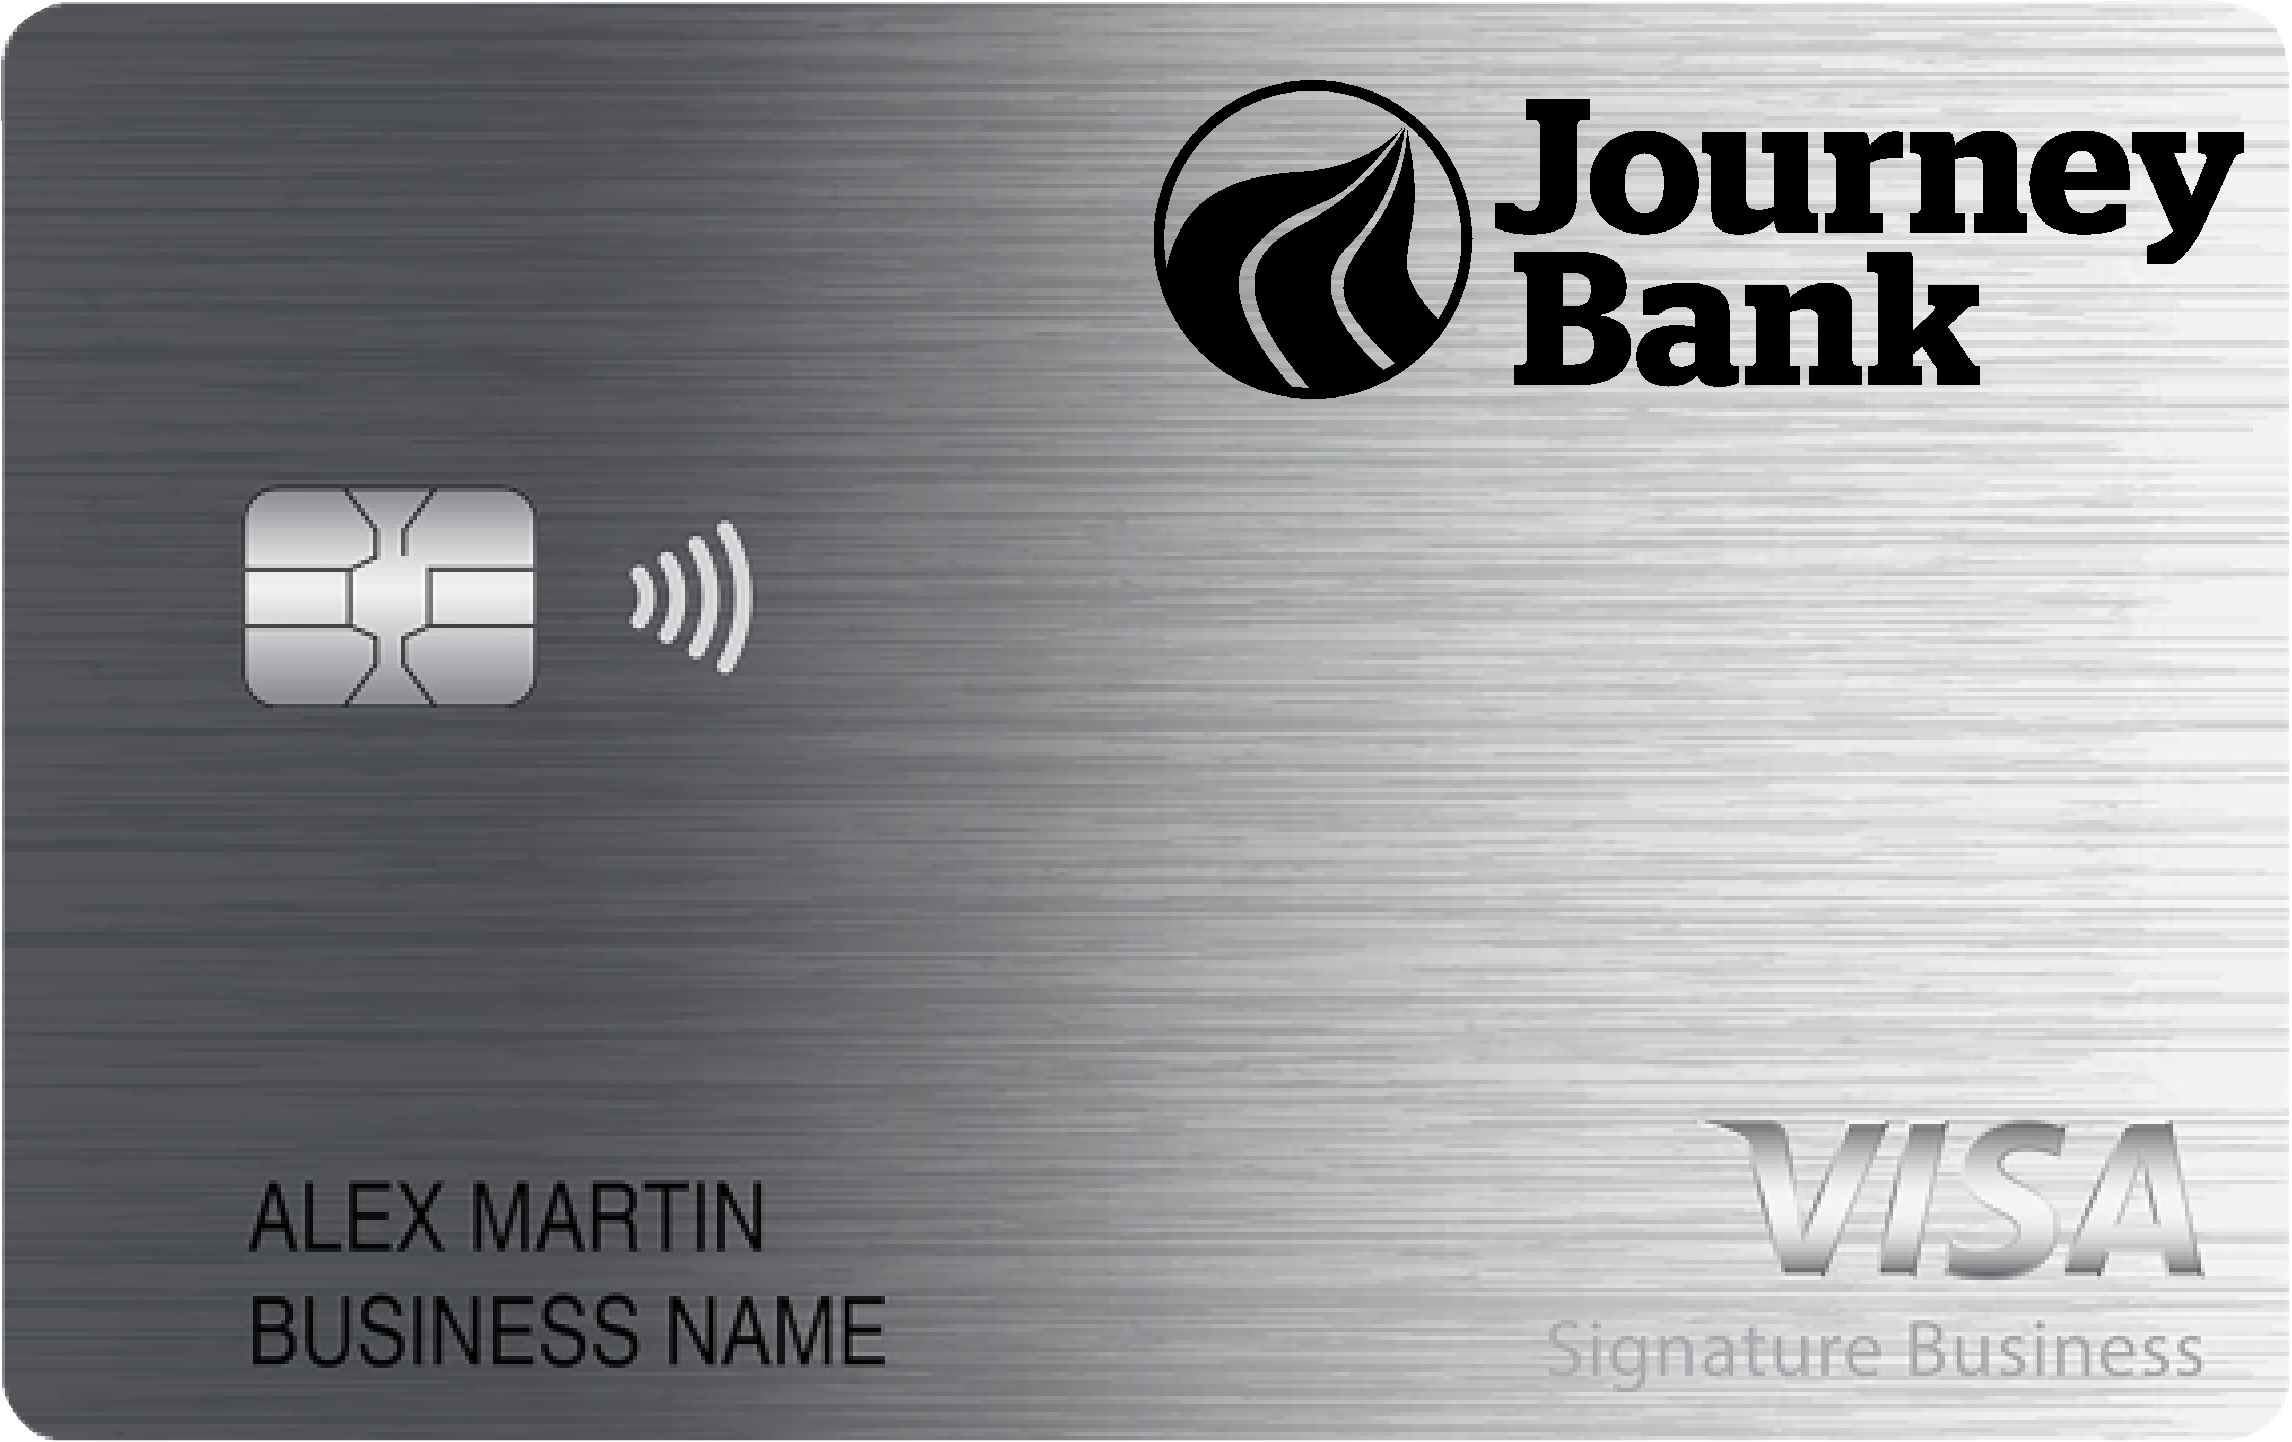 Journey Bank Smart Business Rewards Card